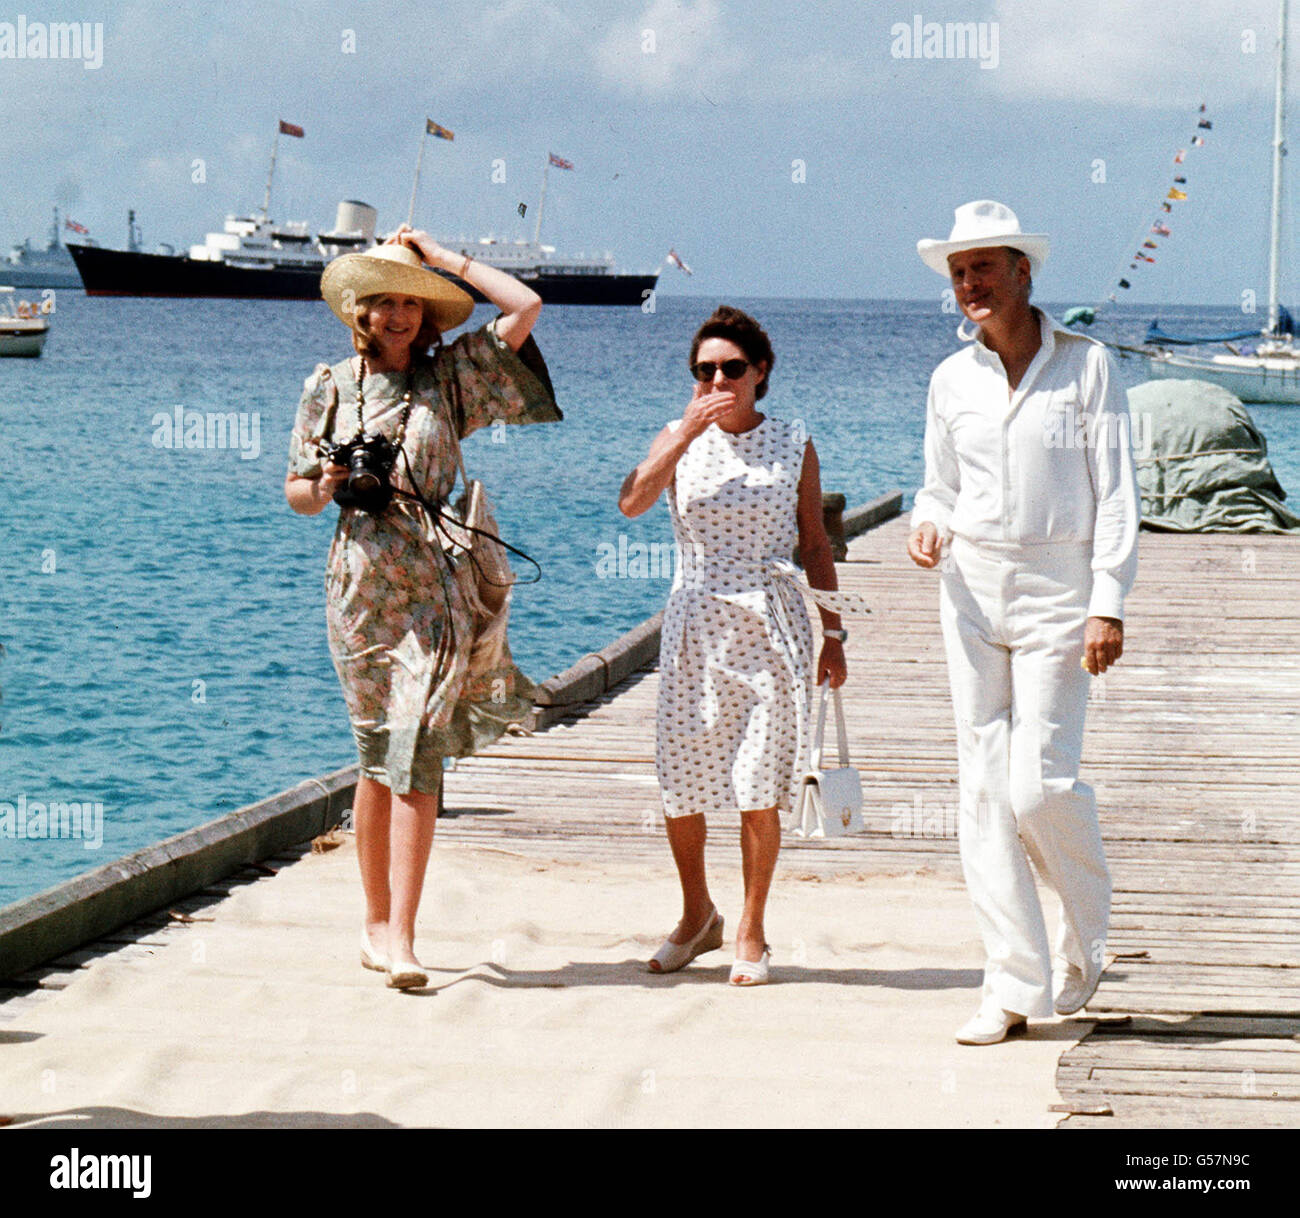 Prinzessin Margaret, Mitte, und ihre Freunde Lady Ann Tennant und Colin Tennant warten auf dem Anlegesteg auf der karibischen Insel Mustique, um Königin Elizabeth II. Zu begrüßen Die Royal Yacht Britannia ist im Hintergrund zu sehen. Stockfoto